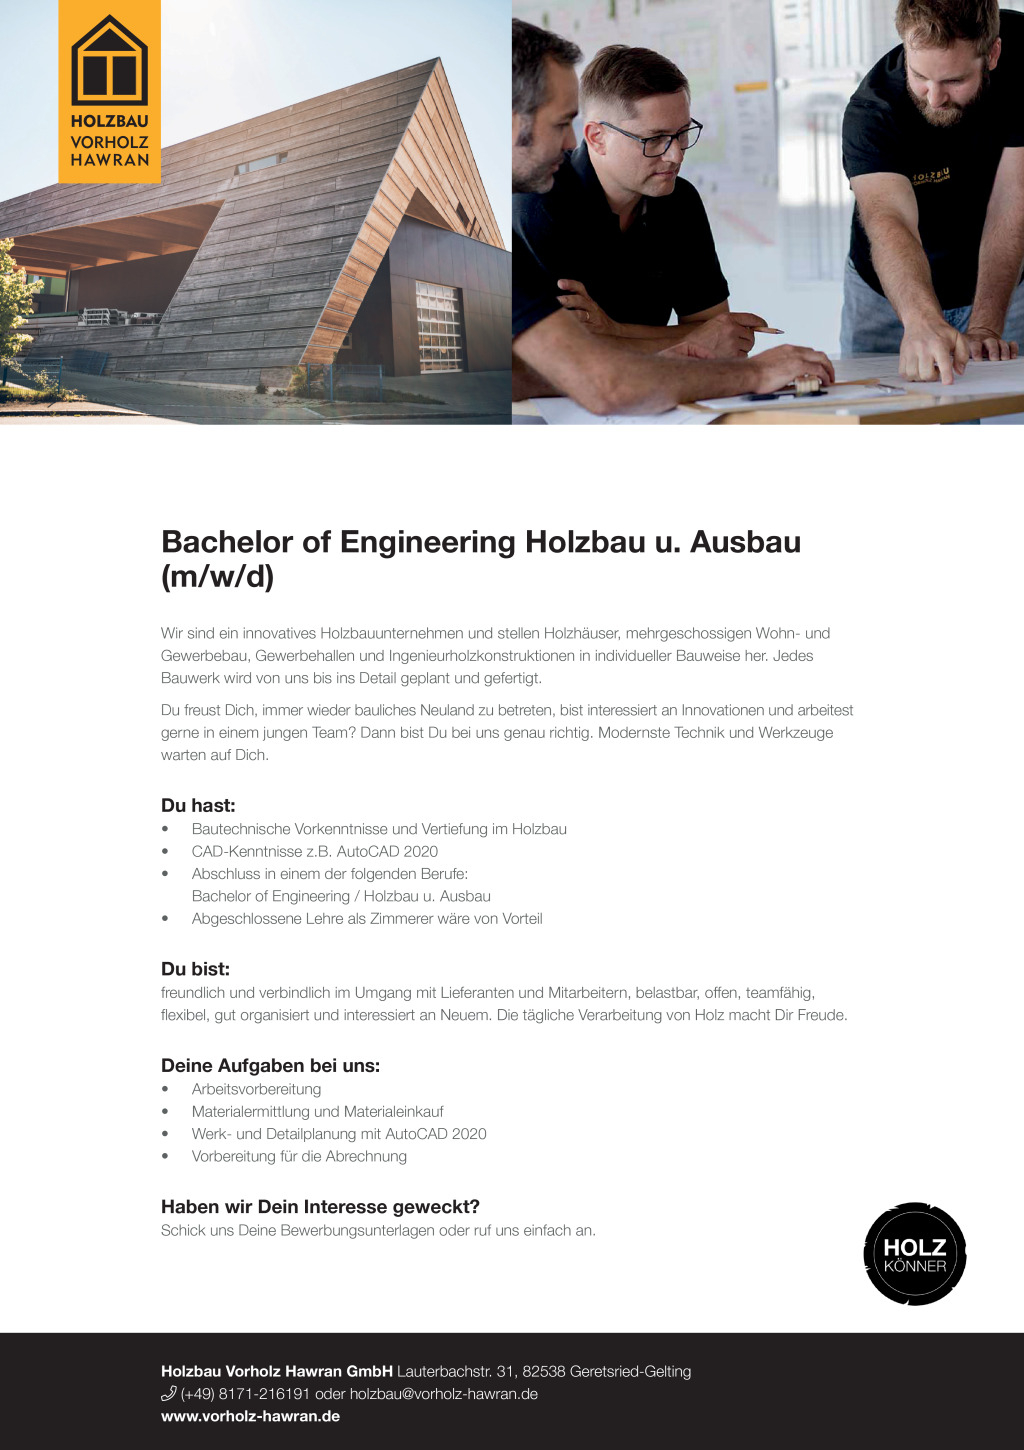 Bachelor of Engineering Holzbau und Ausbau (m/w/d)